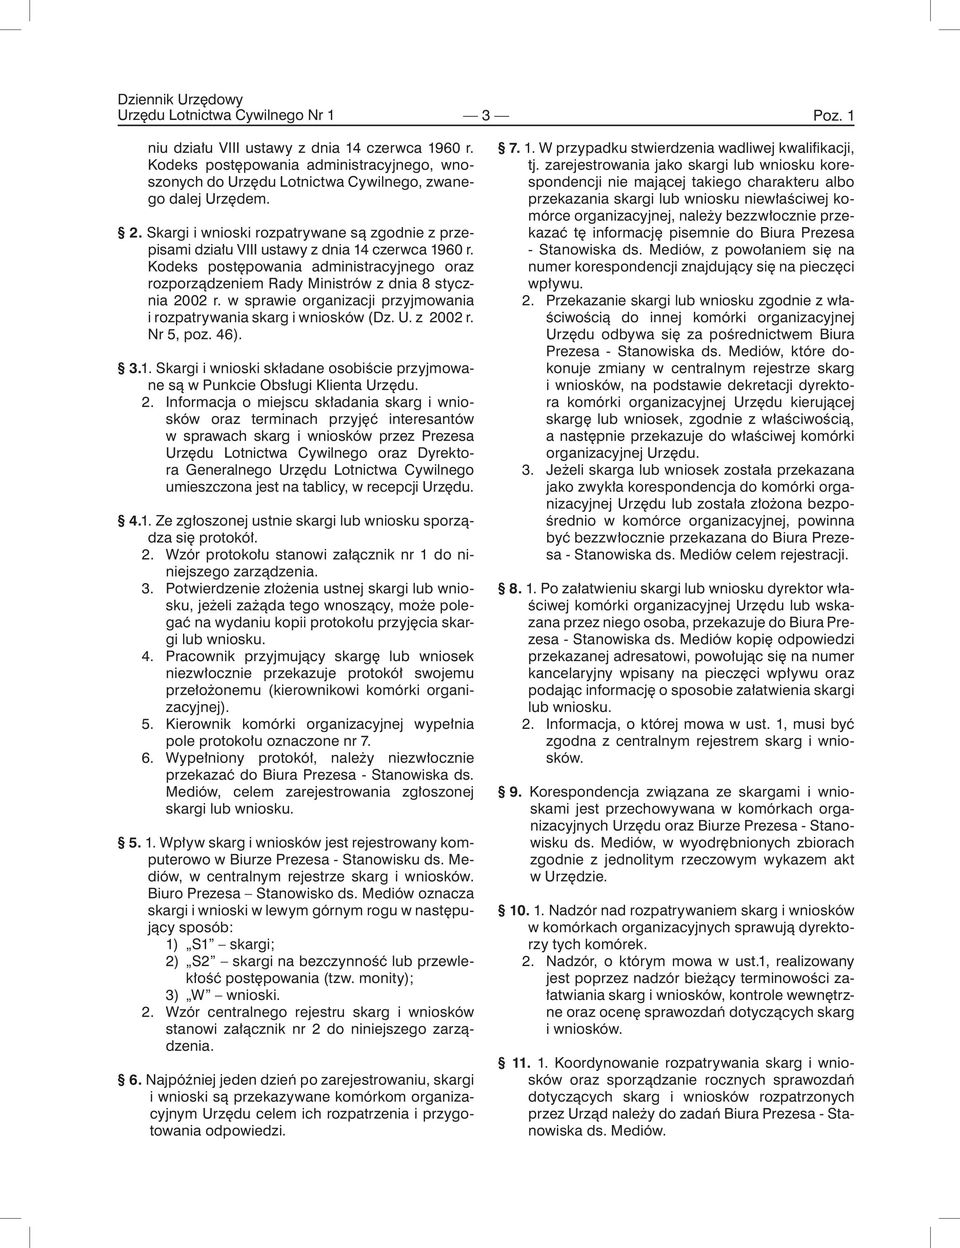 w sprawie organizacji przyjmowania i rozpatrywania skarg i wniosków (Dz. U. z 20